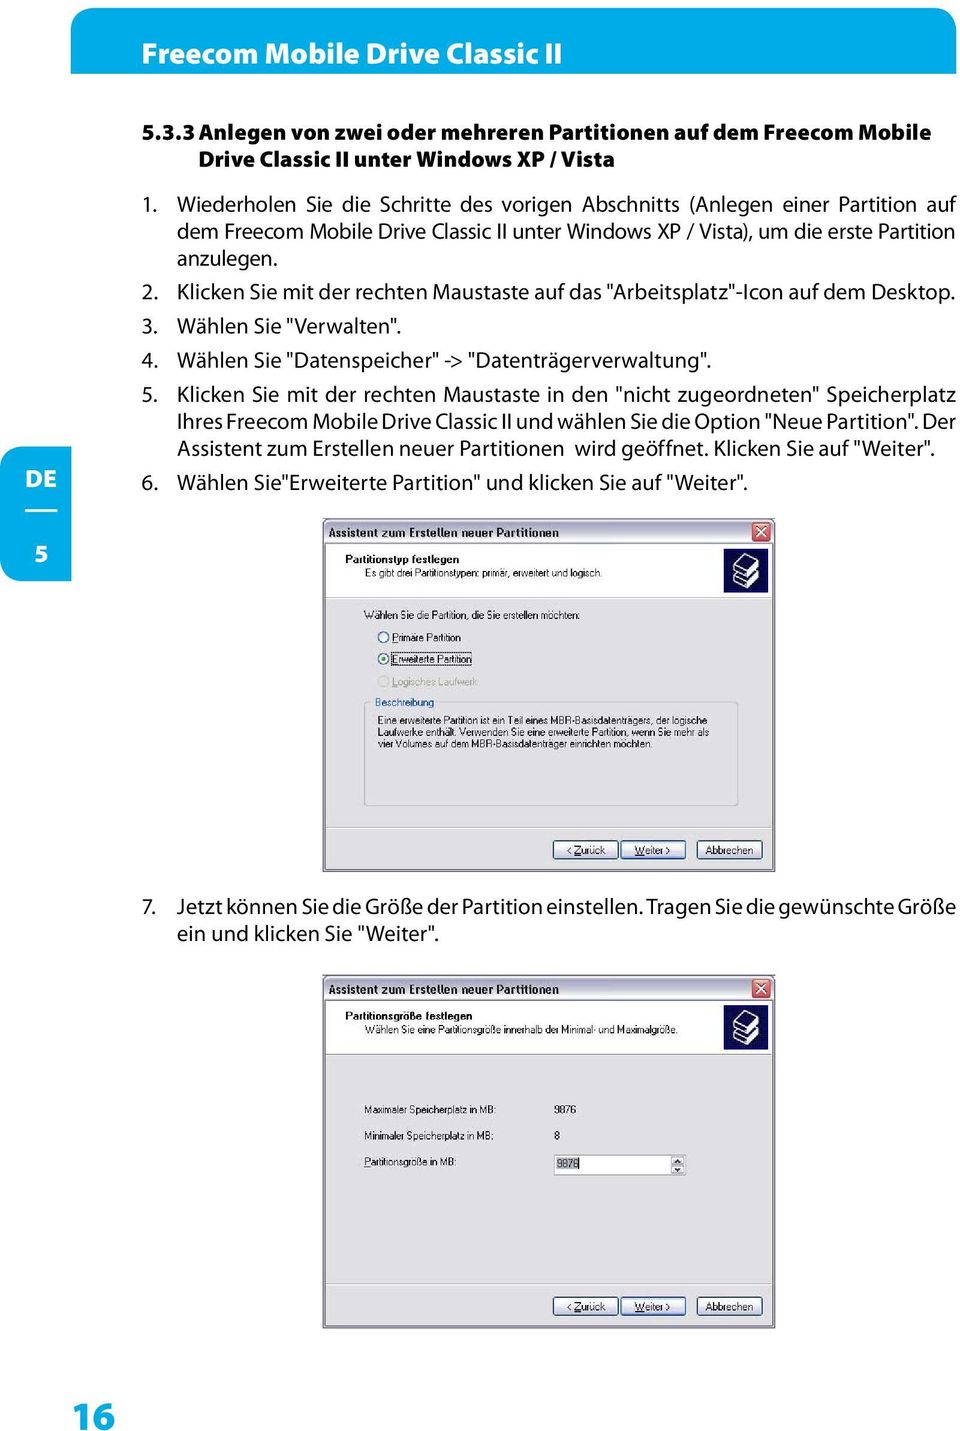 Klicken Sie mit der rechten Maustaste auf das "Arbeitsplatz"-Icon auf dem Desktop. 3. Wählen Sie "Verwalten". 4. Wählen Sie "Datenspeicher" -> "Datenträgerverwaltung". 5.